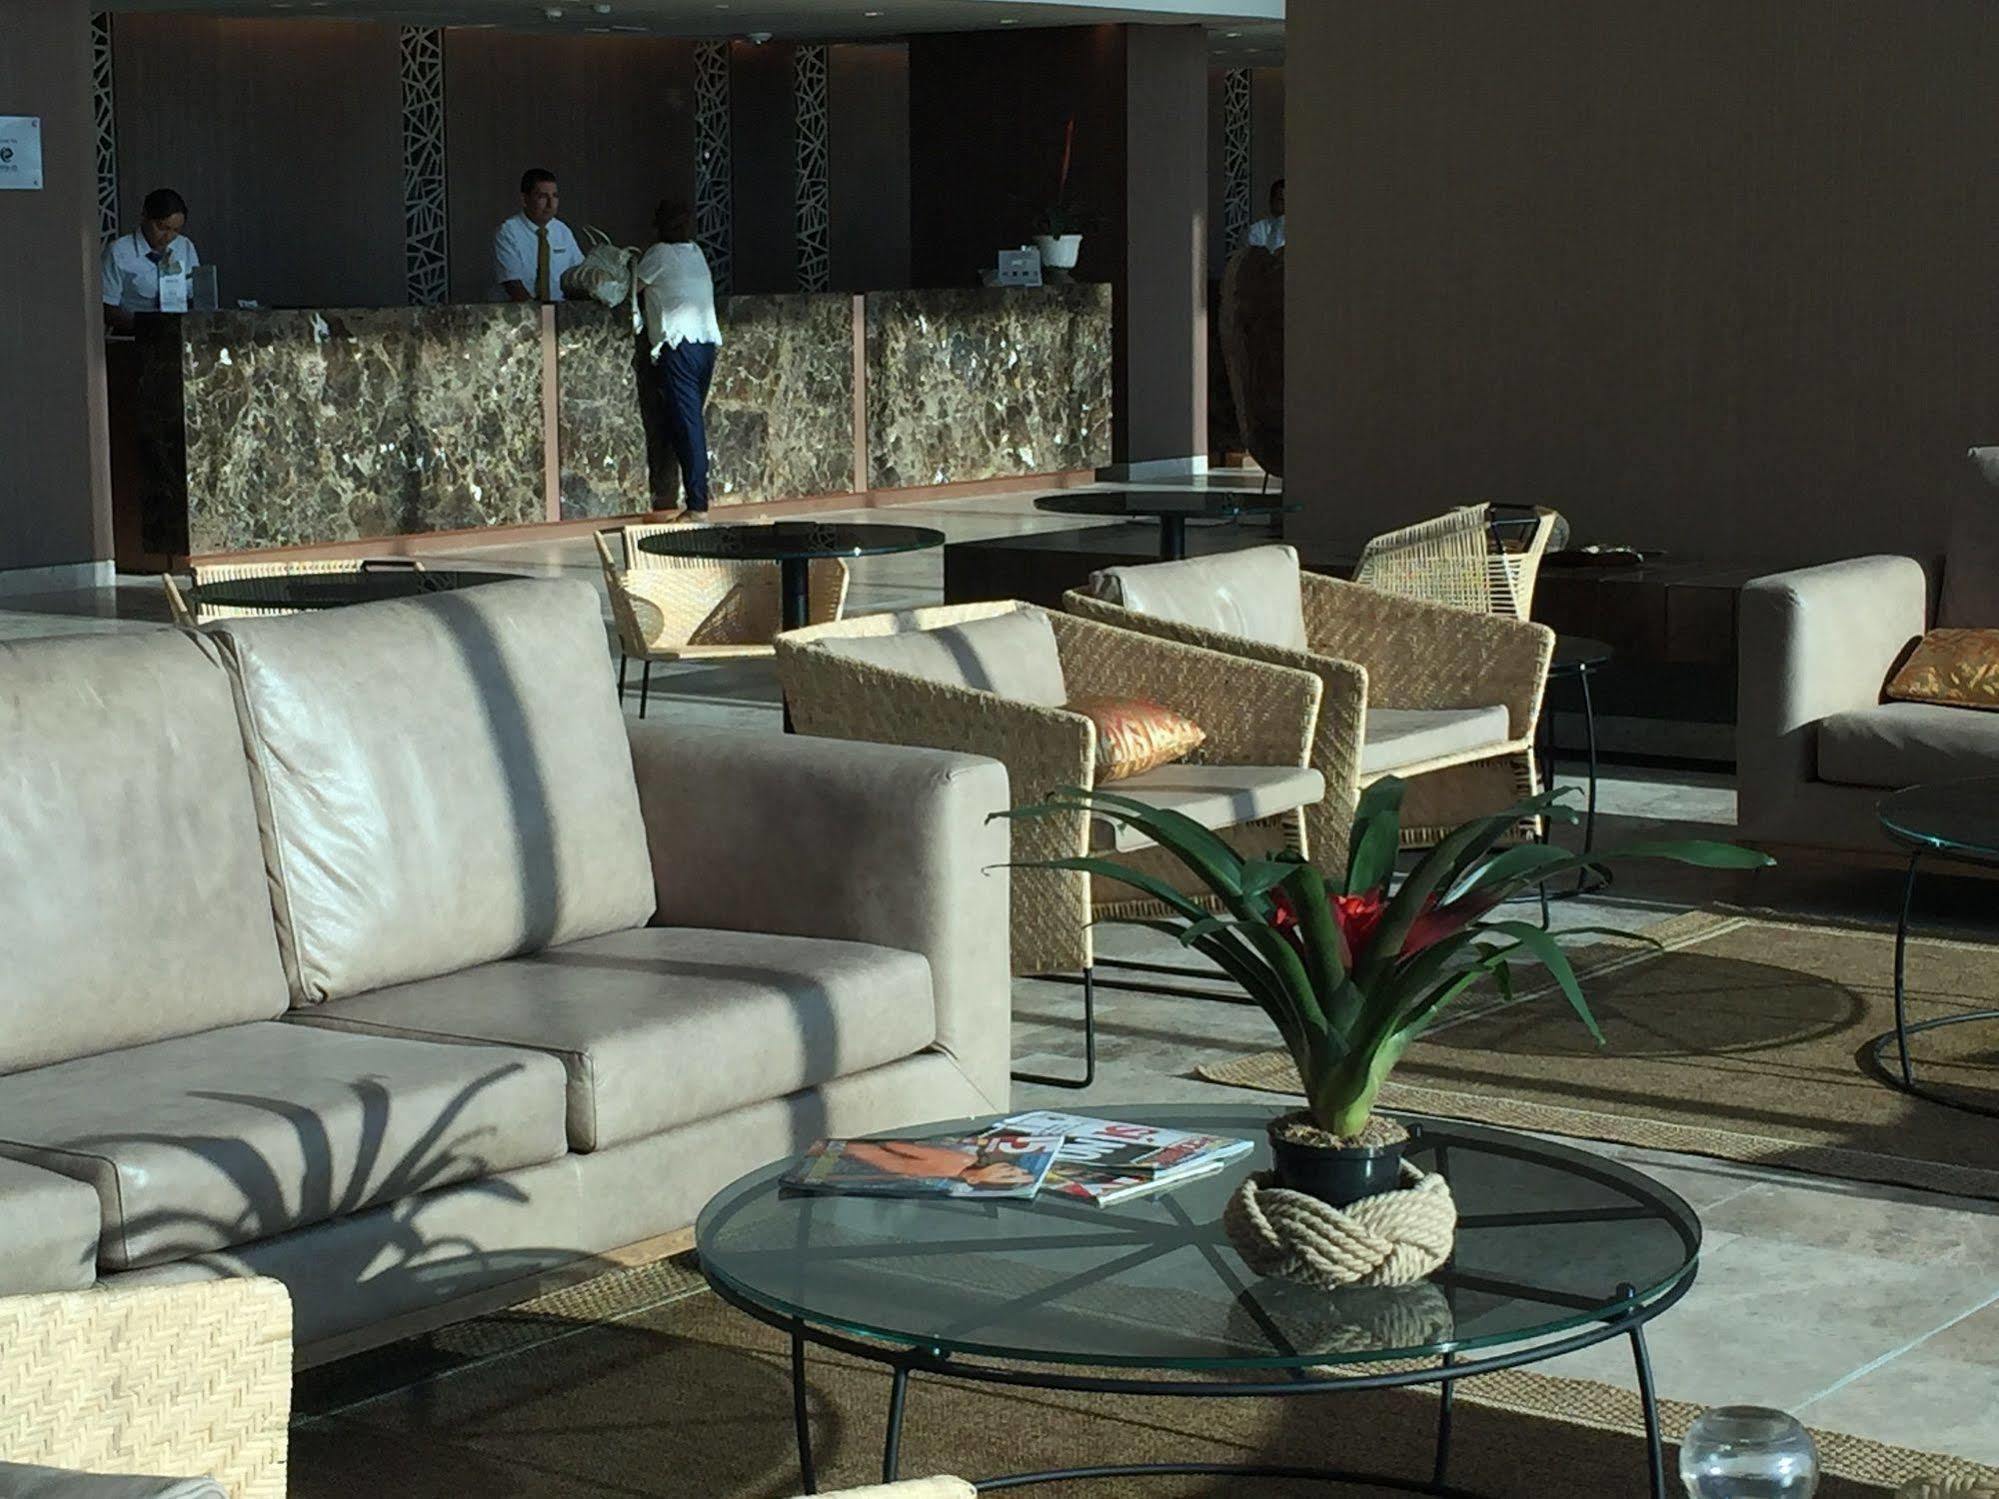 Estelar Cartagena De Indias Hotel Y Centro De Convenciones Bagian luar foto